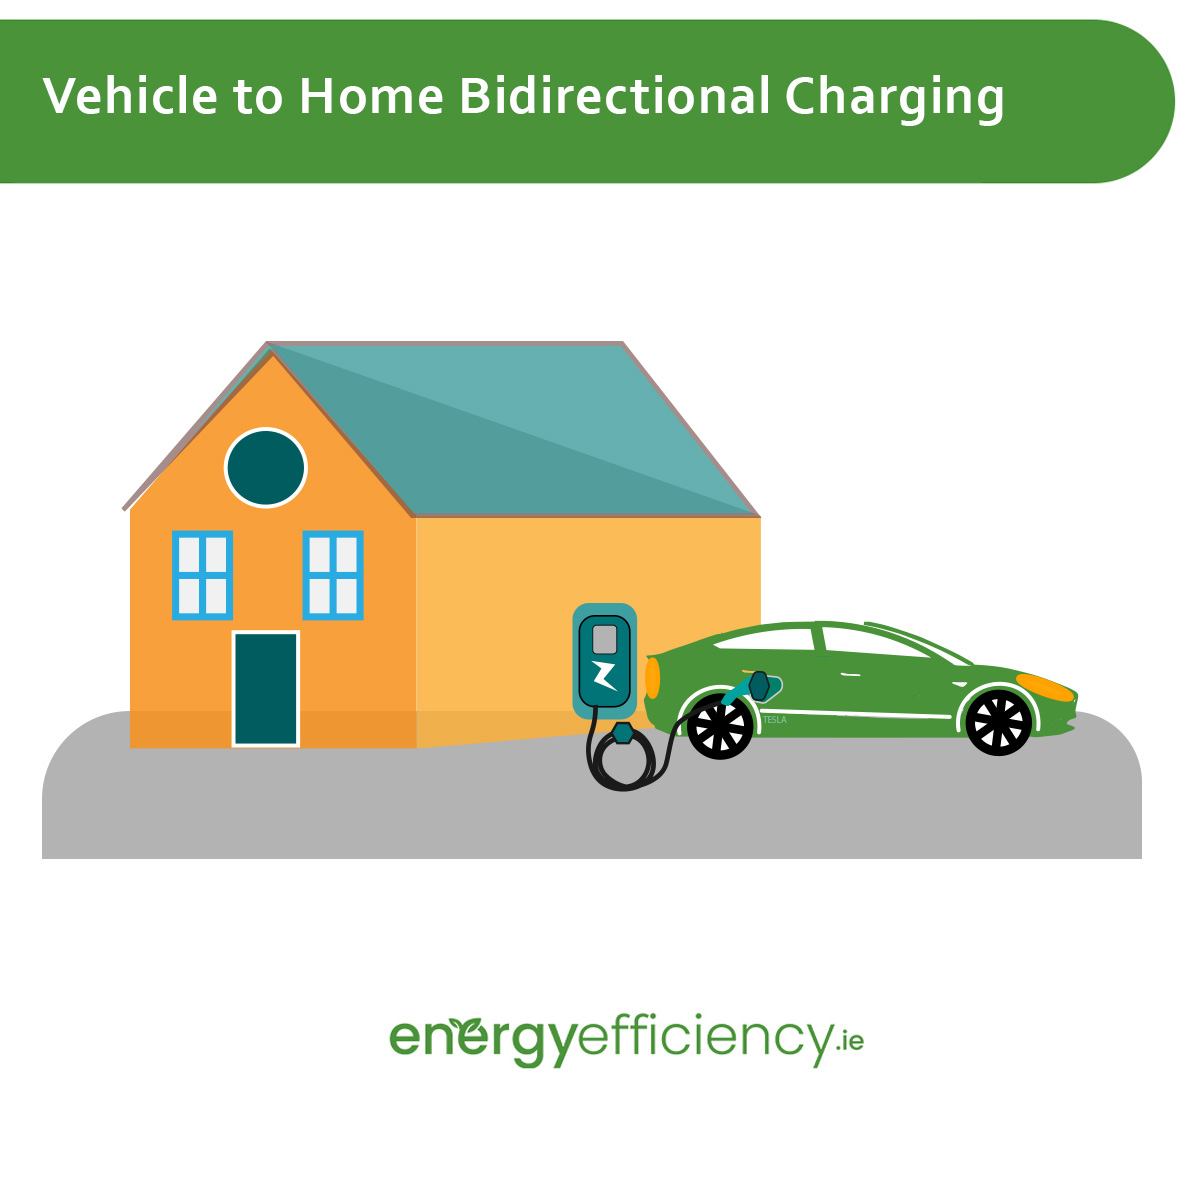 Vehicle to Home Bidirectional Charging